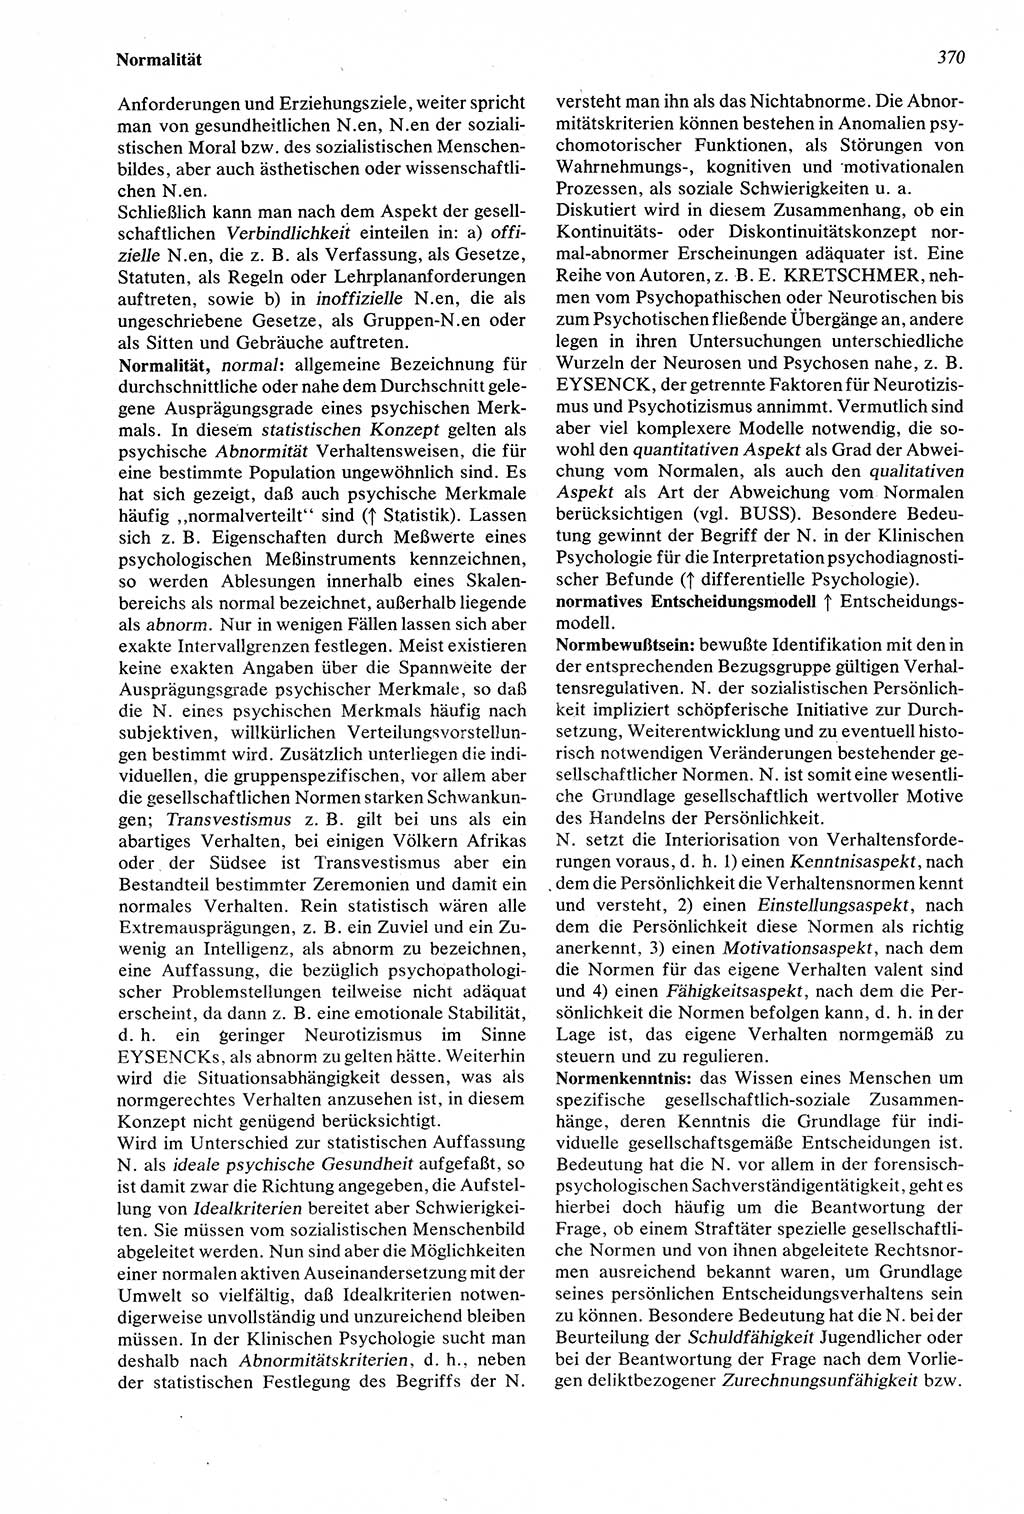 Wörterbuch der Psychologie [Deutsche Demokratische Republik (DDR)] 1976, Seite 370 (Wb. Psych. DDR 1976, S. 370)